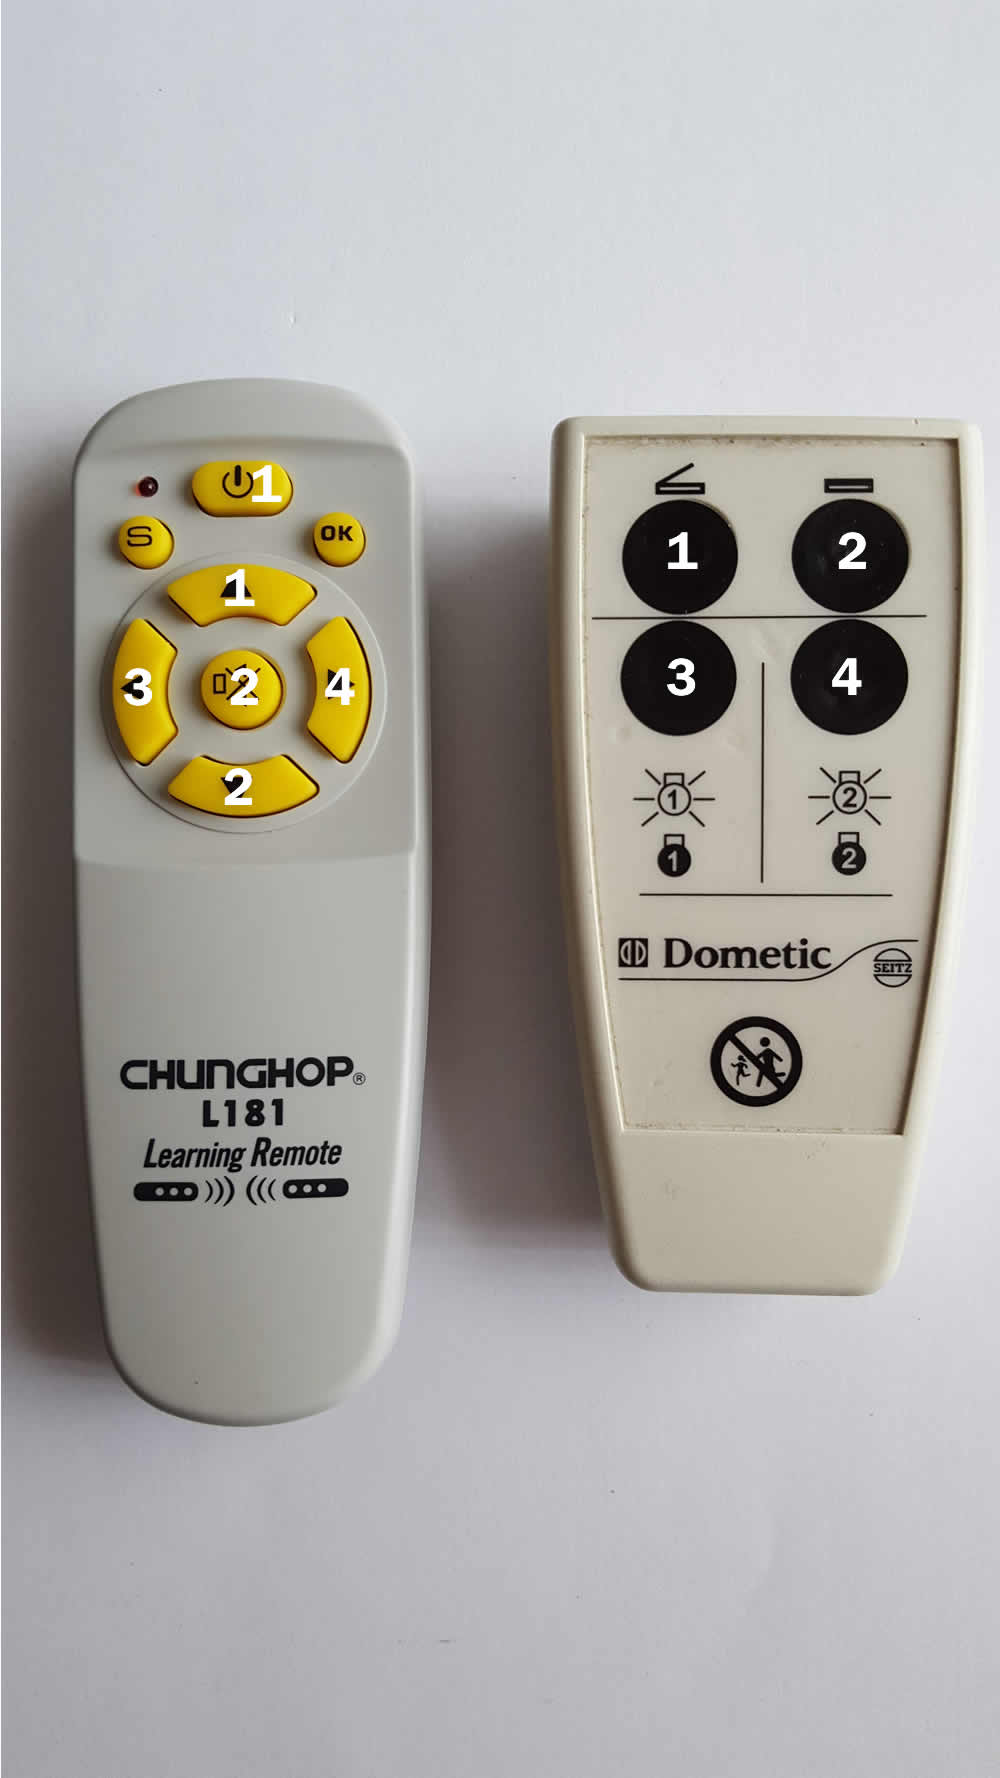 cloned remote control